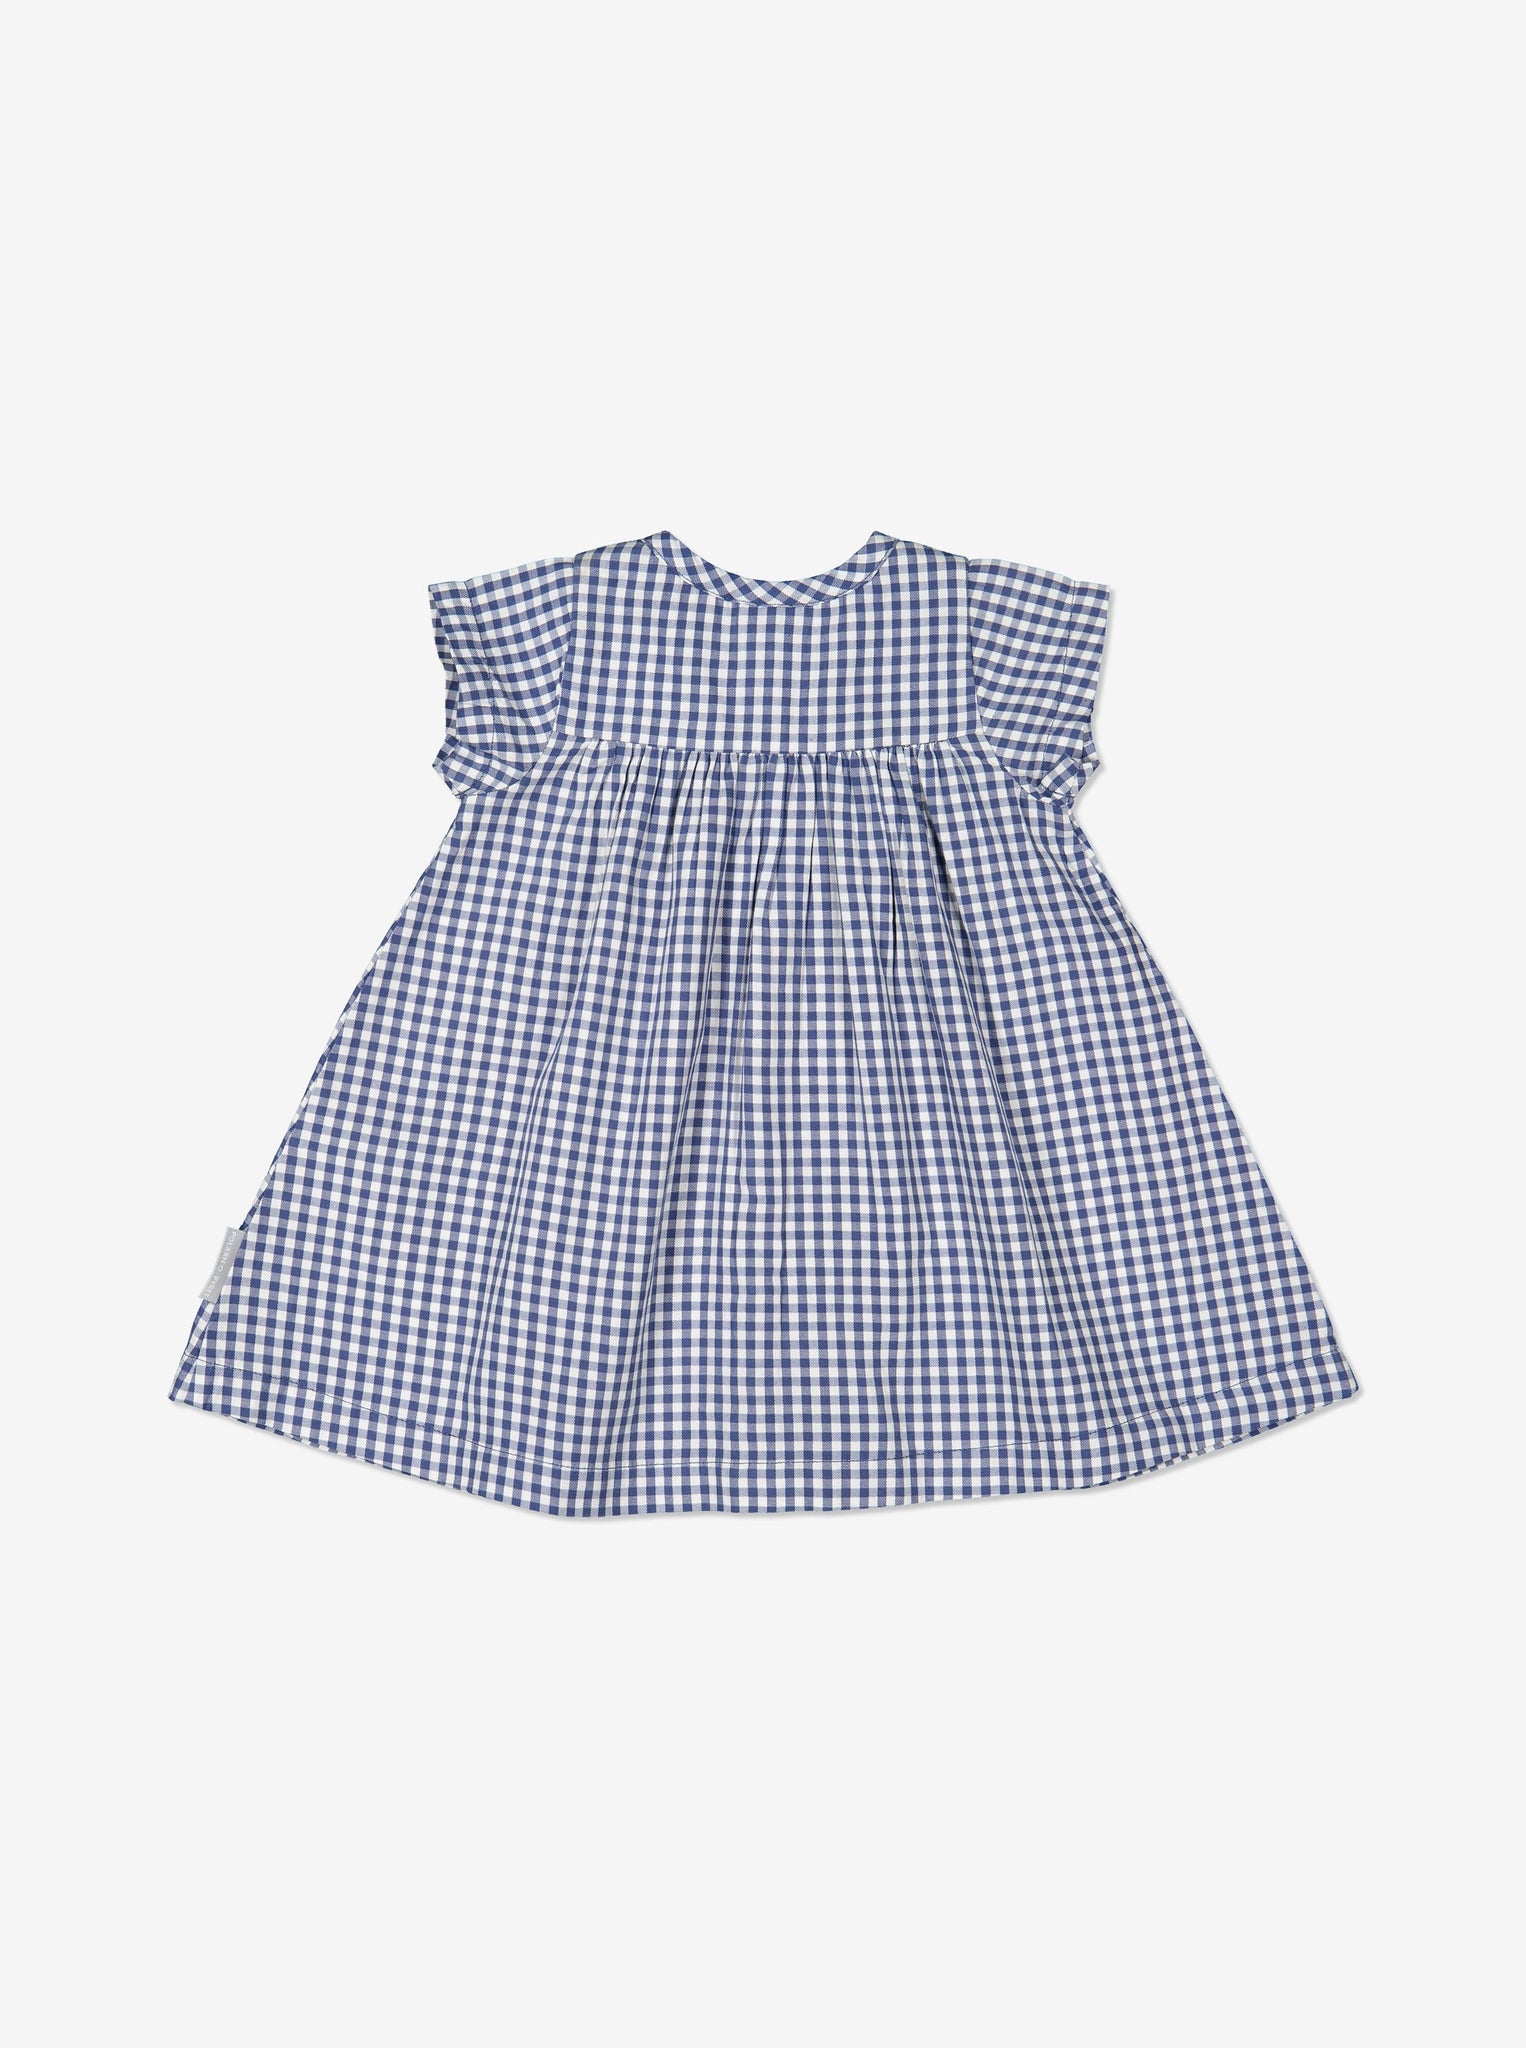 Girls Blue Newborn Baby Checked Organic Dress 